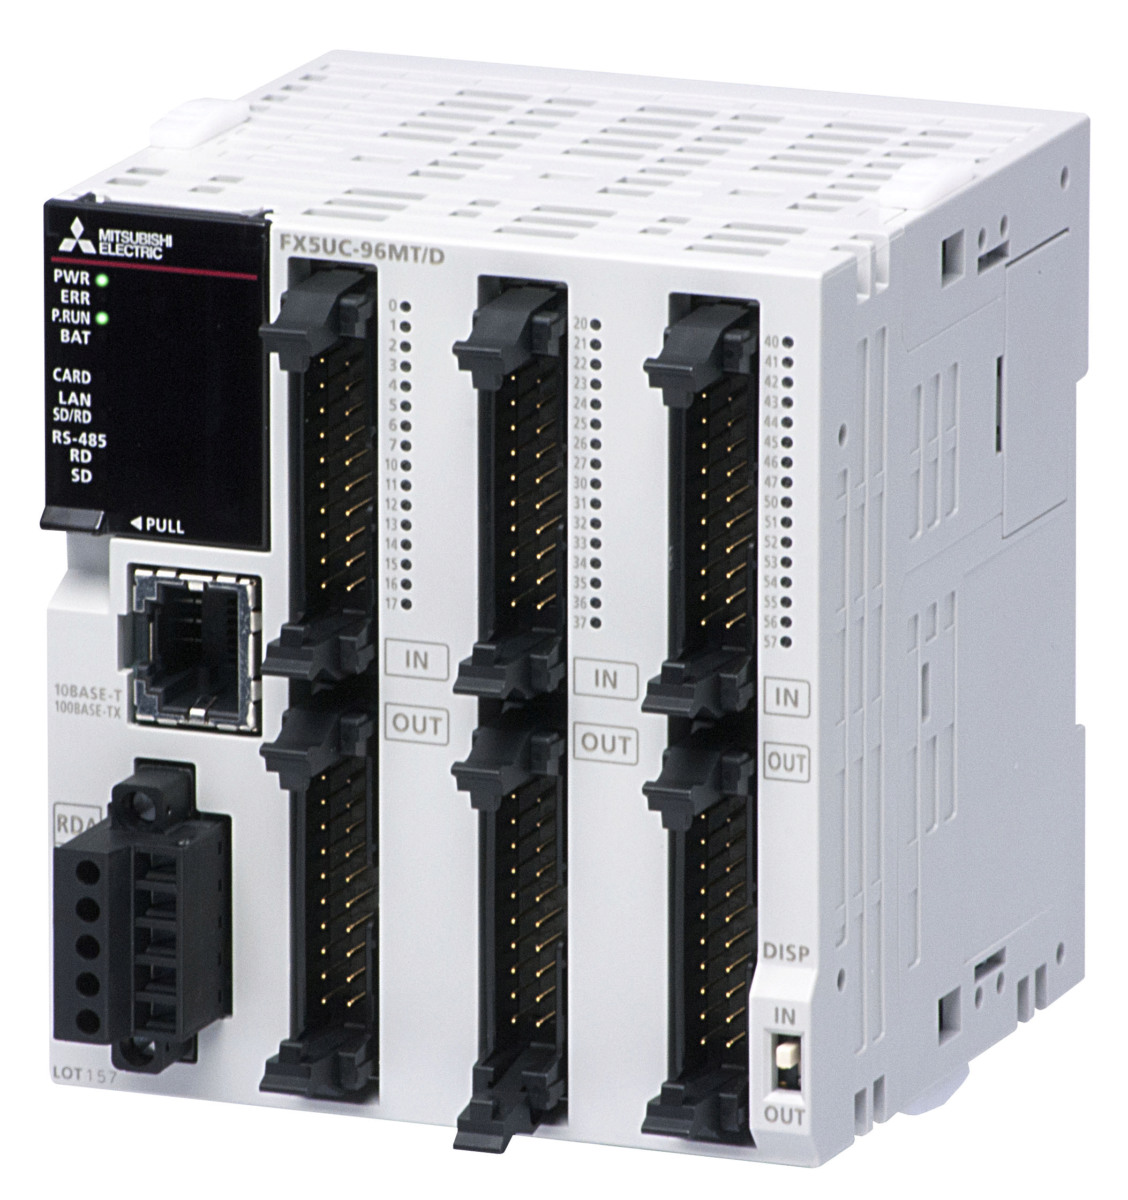 FX5UC-96MT/DSS | Main Unit | PLC Compact | PLC | Catalogue